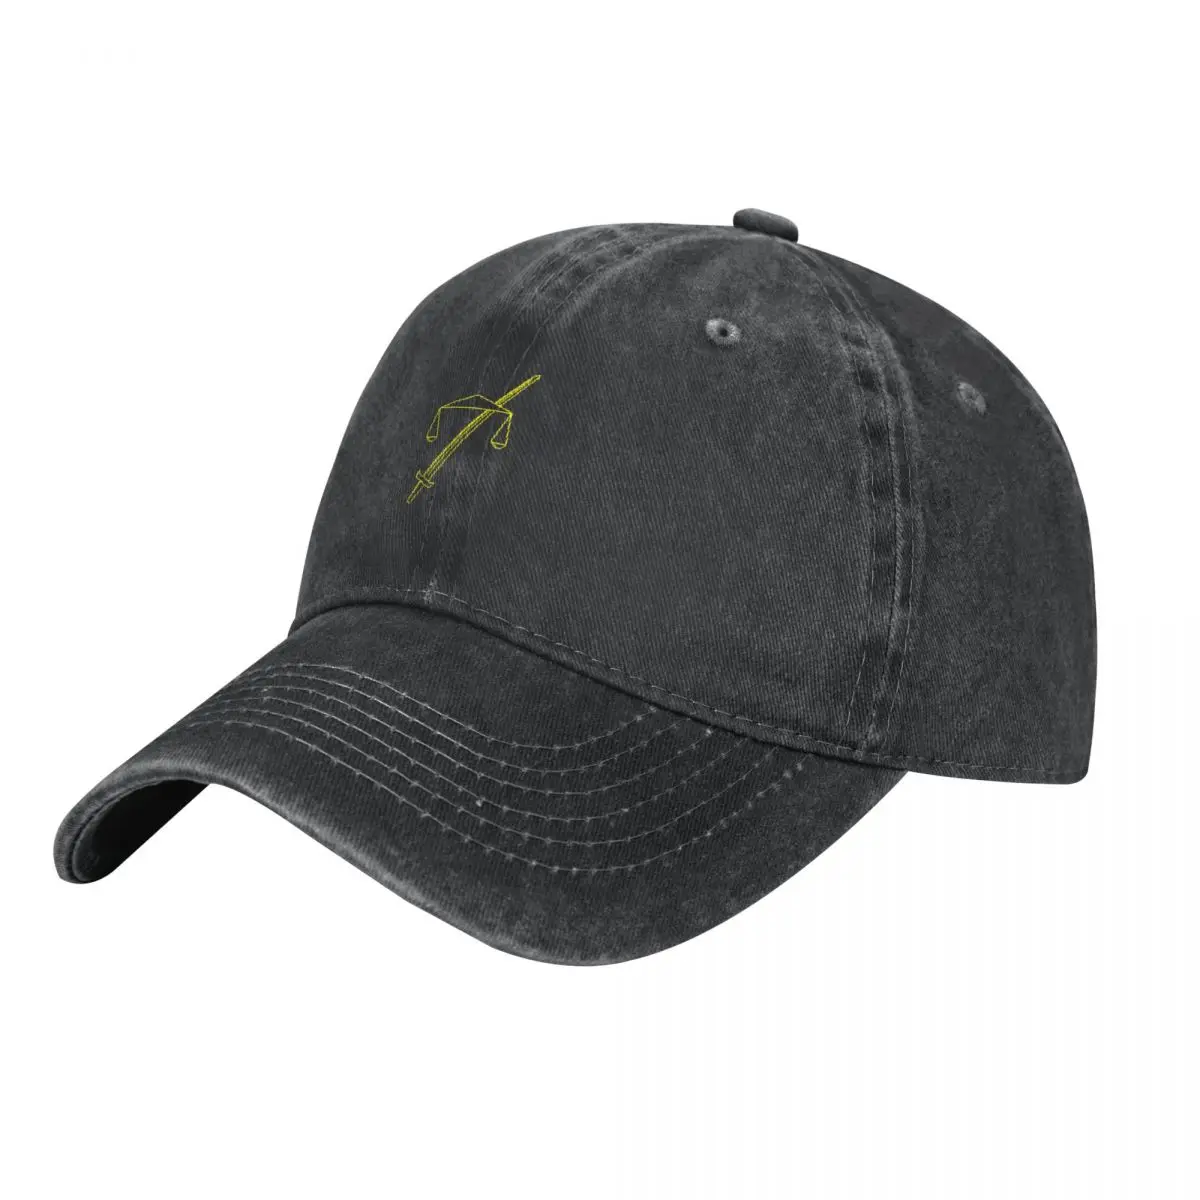 

TempleOS, ковбойская шляпа с желтым логотипом, рыболовная Кепка, летняя кепка, бейсболка для мужчин и женщин